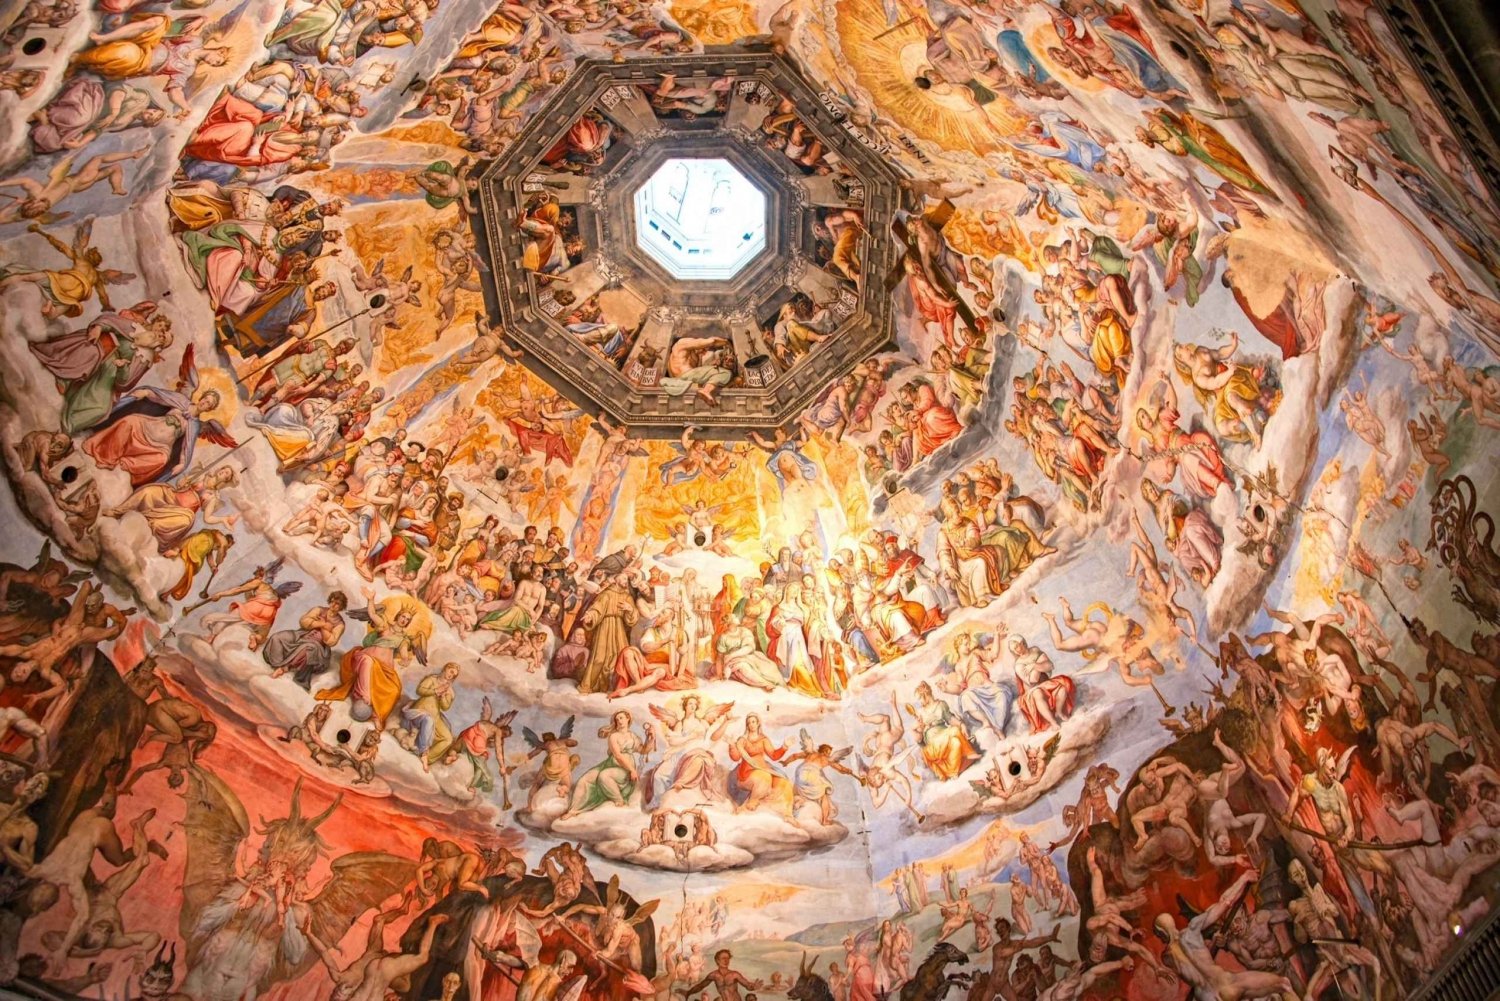 Florencja: Kopuła Brunelleschiego - wycieczka z przewodnikiem